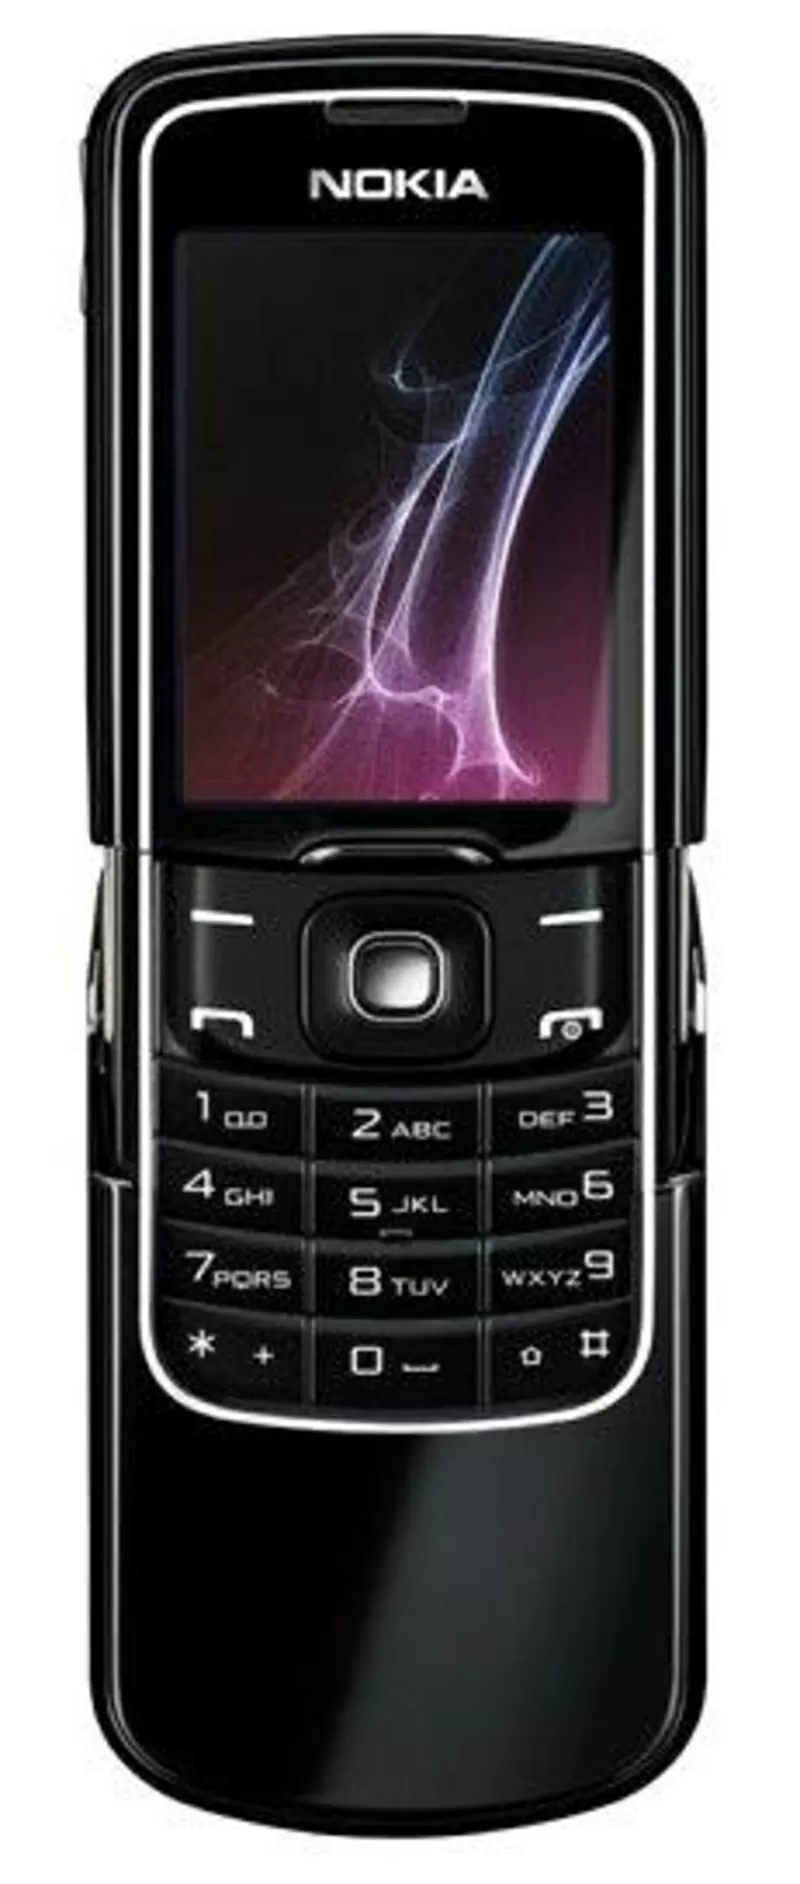    Nokia 8600